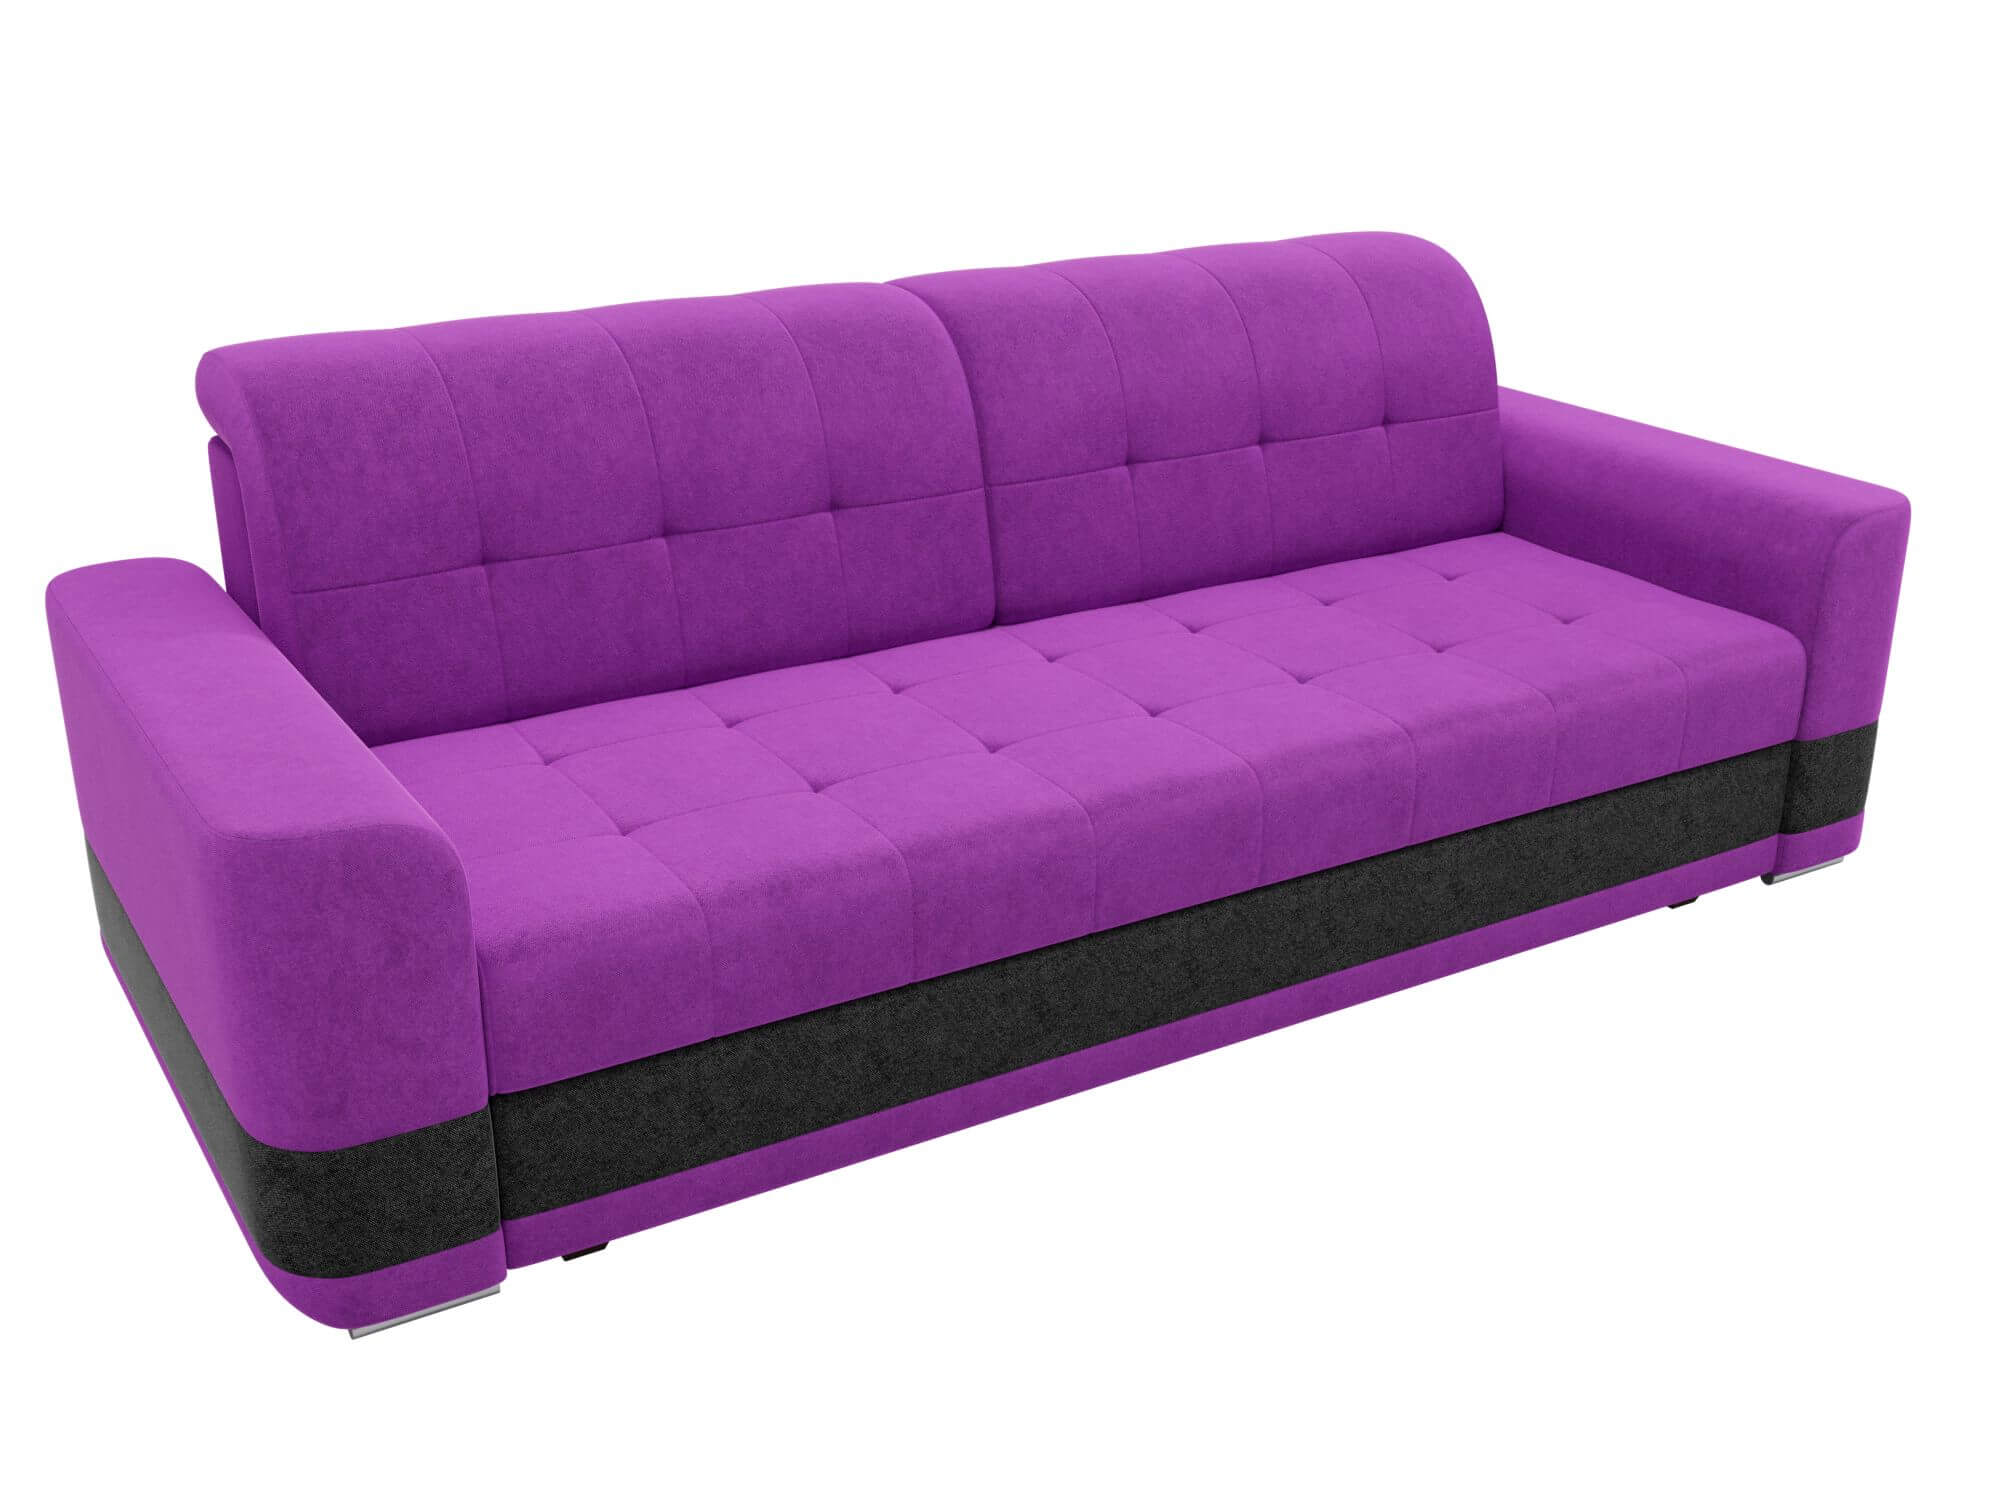 Честер фиолетовый. Честер фиолетоаы1. Фиолетовый диван. Новый диван. Прямой диван Бронкс фиолетовый.